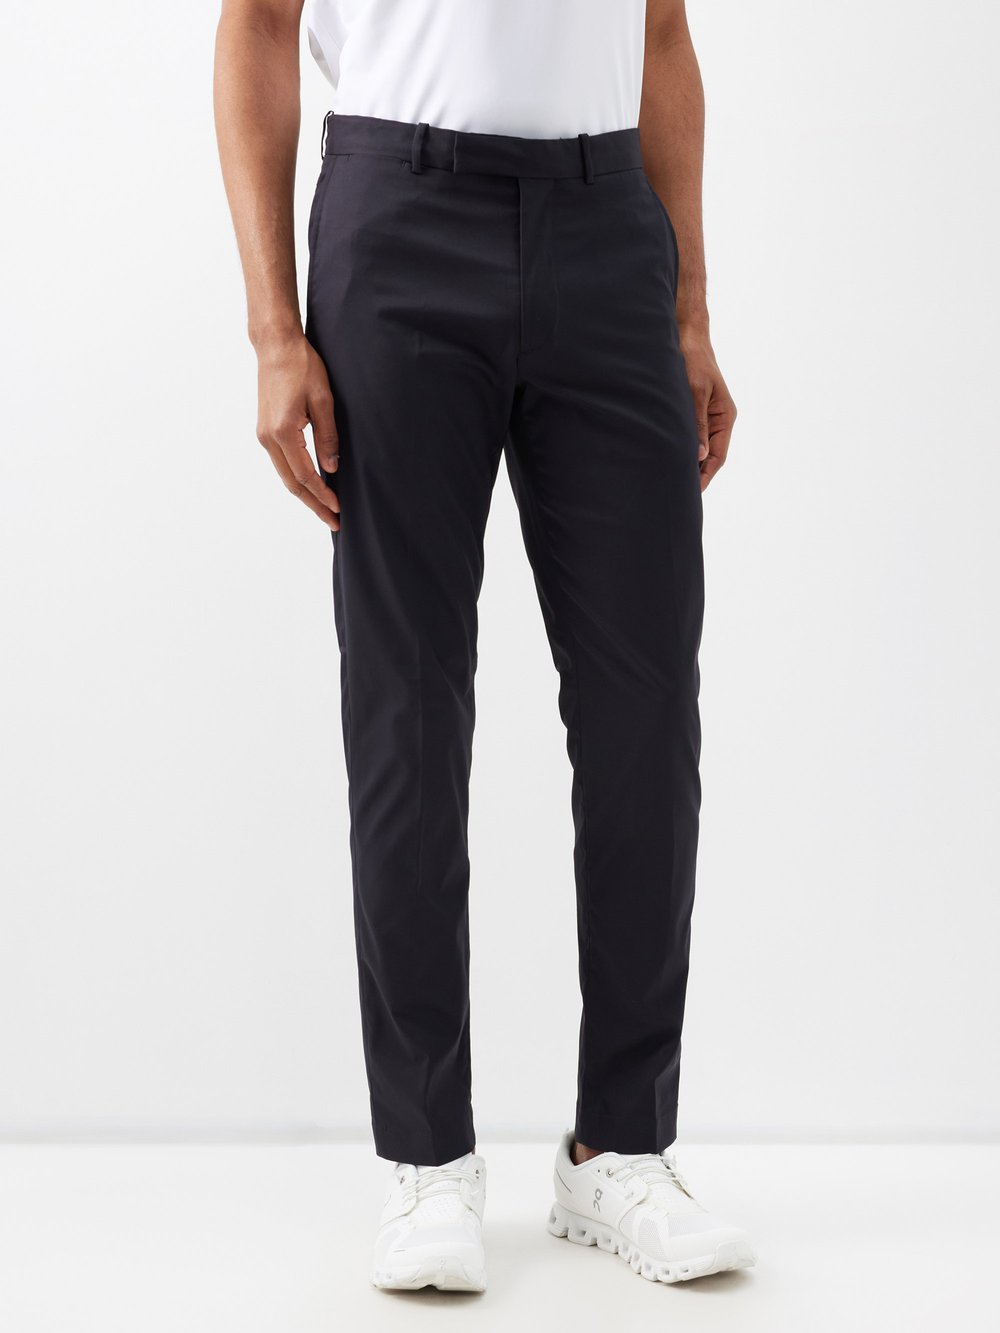 Узкие брюки для гольфа из технического твила Polo Ralph Lauren, черный